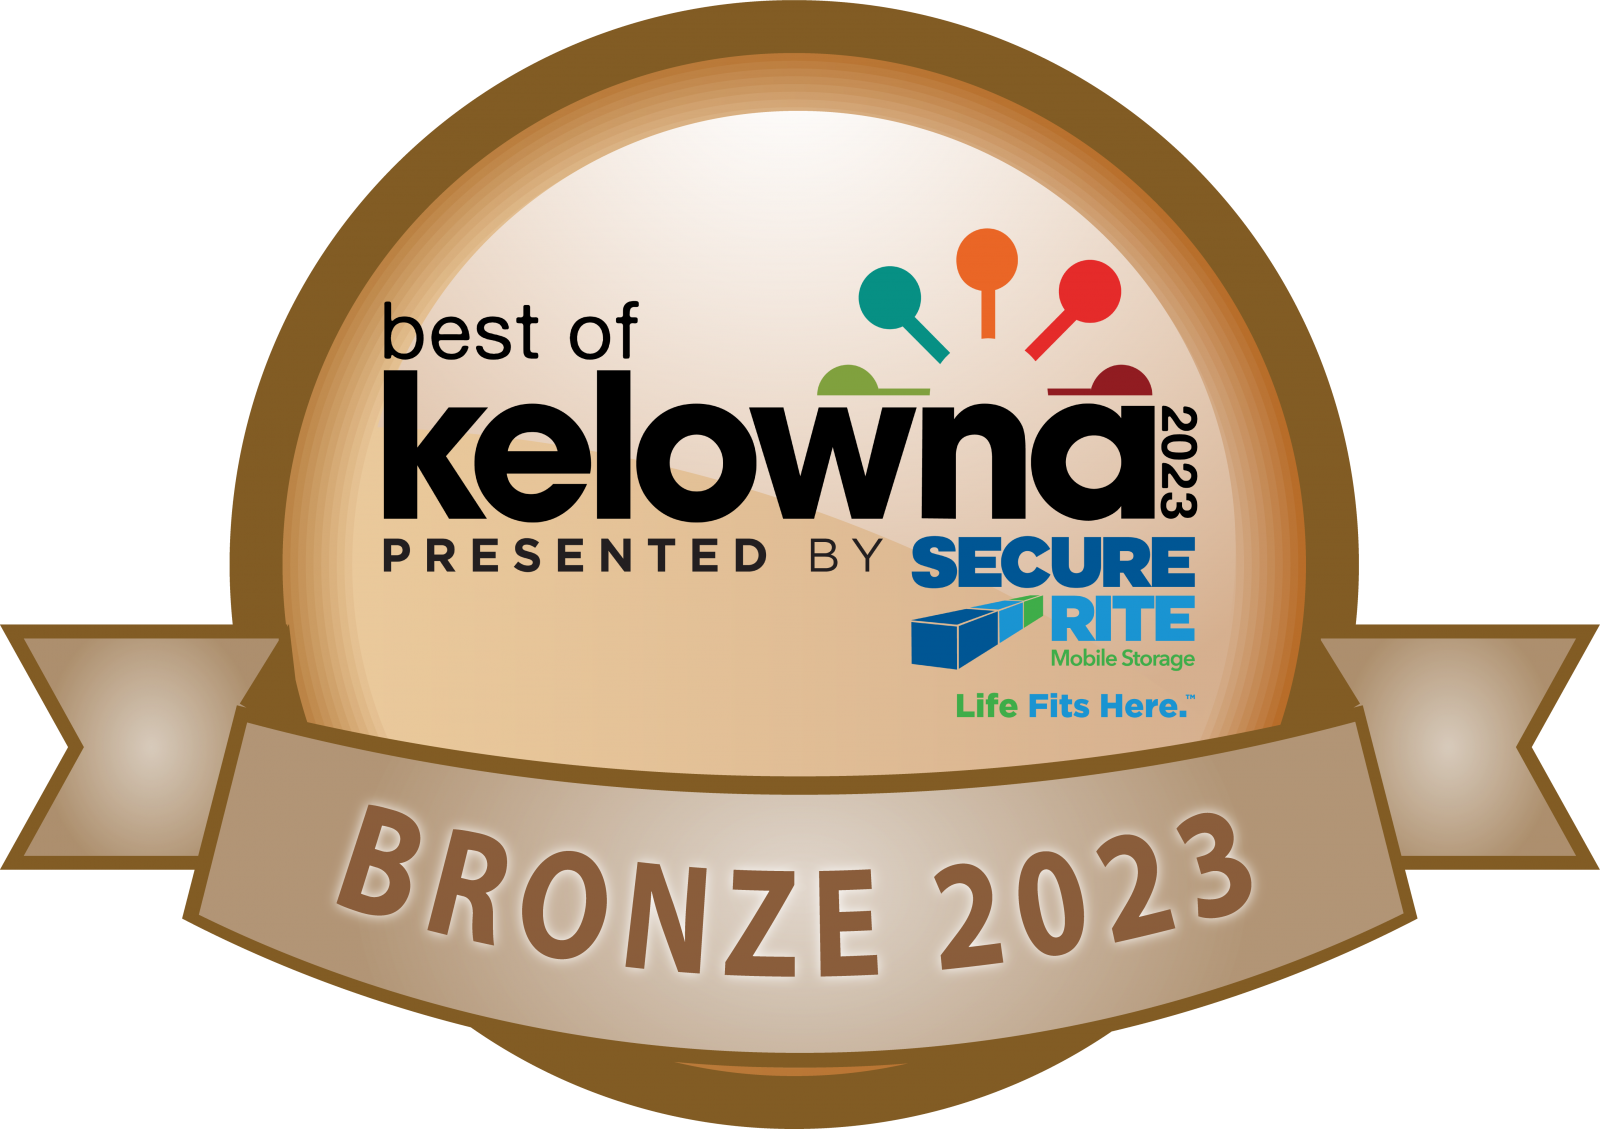 Best of Kelowna - Technology Company - Kelowna Software